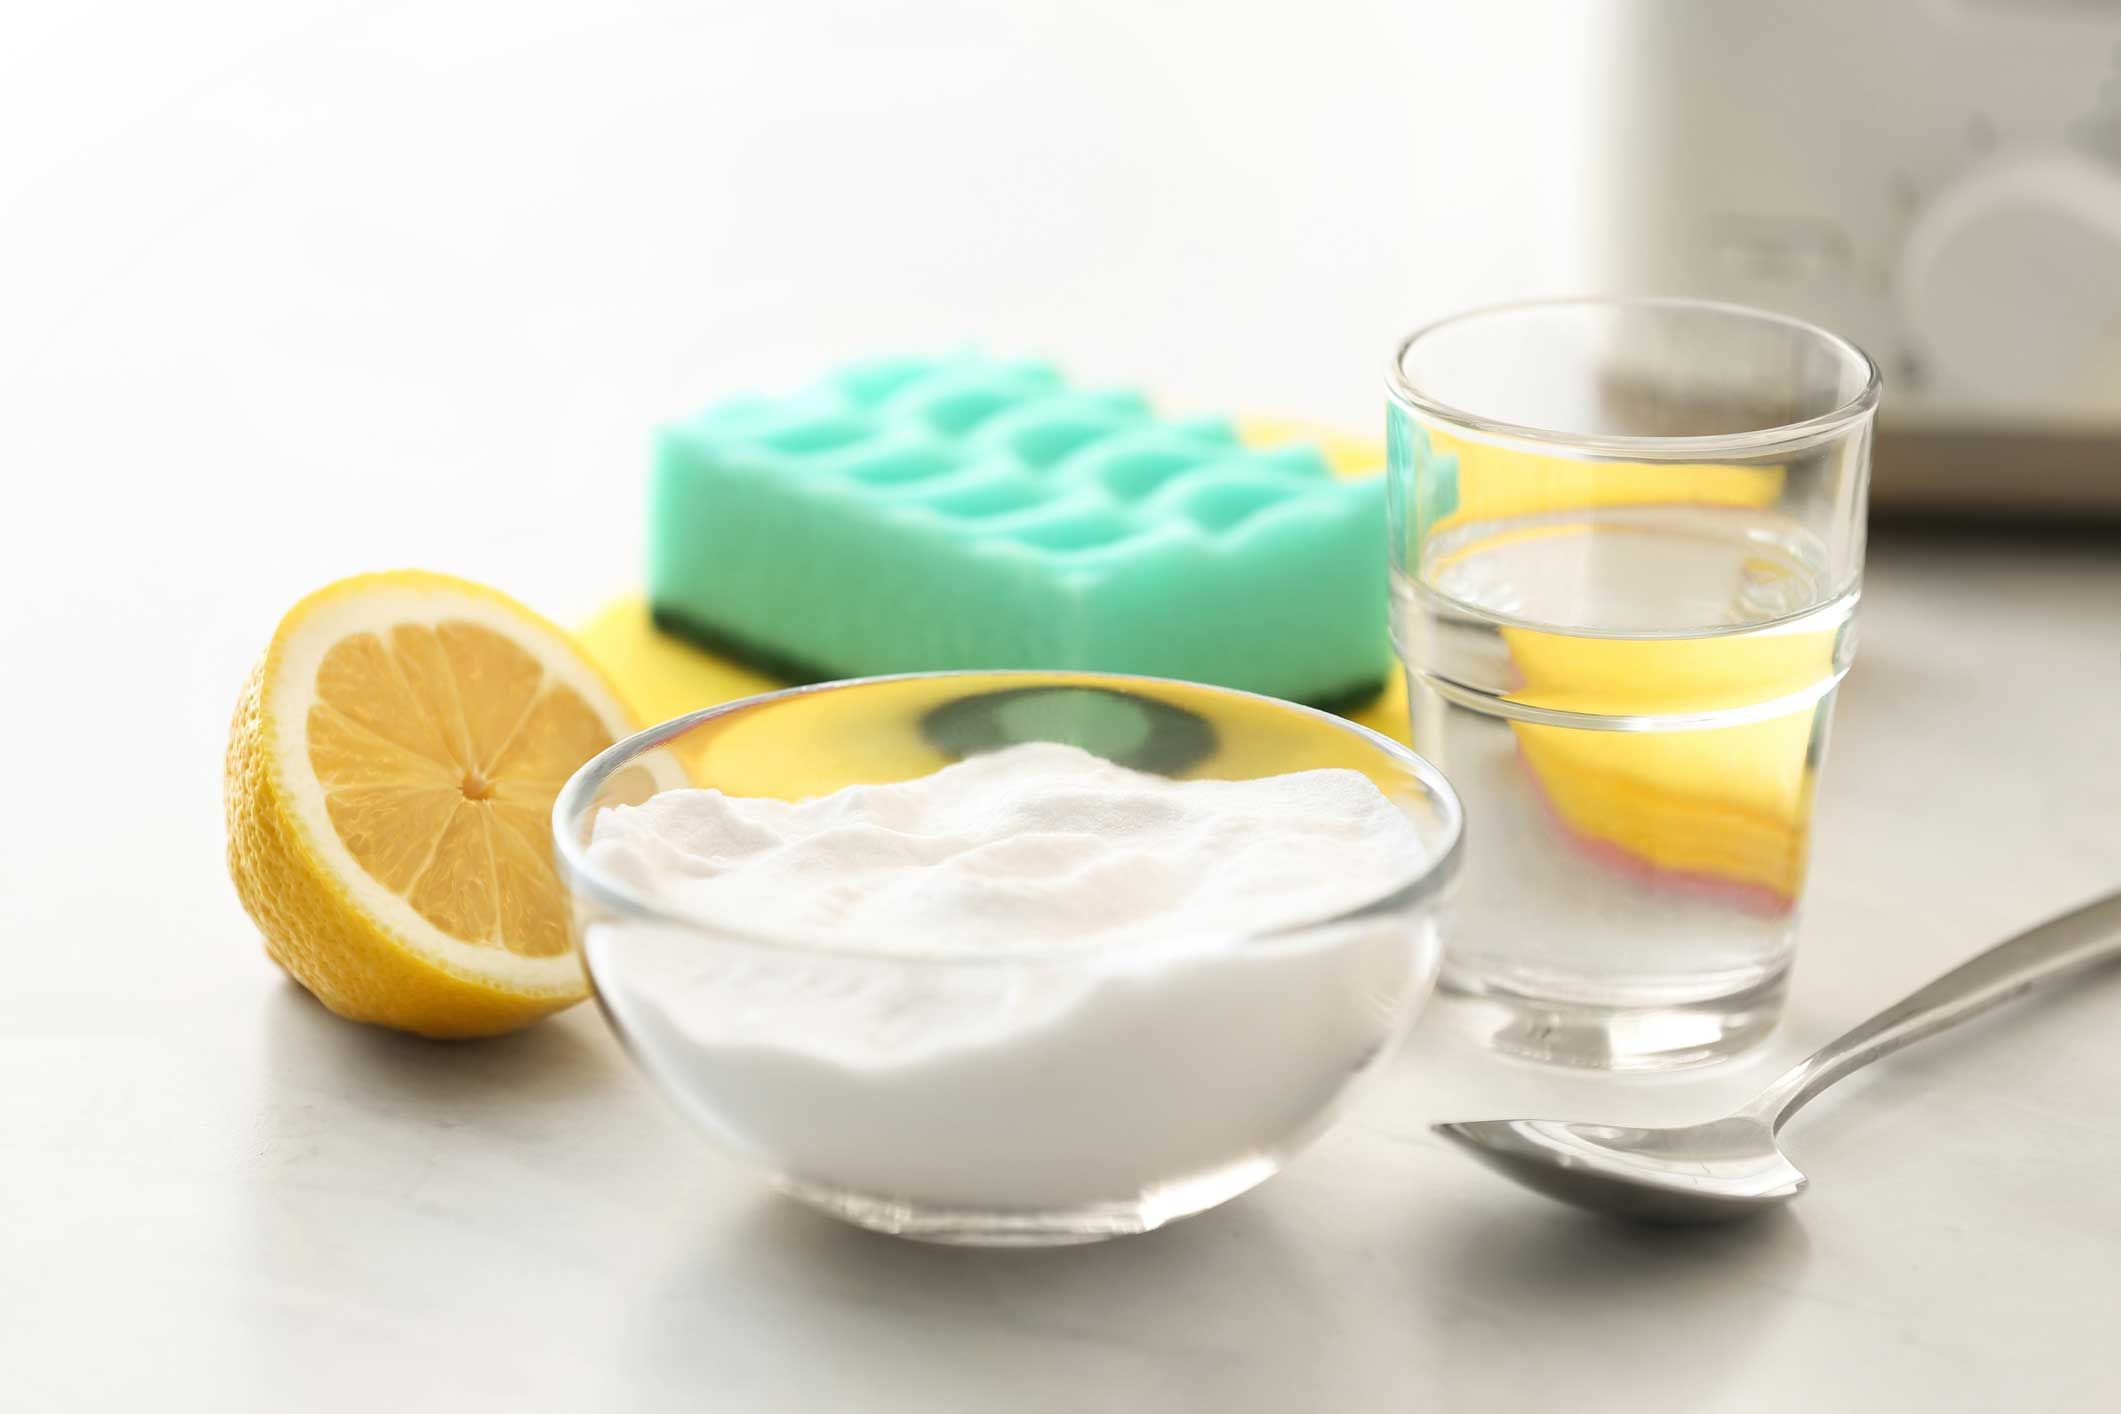 Zitronensäure und Backpulver helfen beim Reinigen von Edelstahl